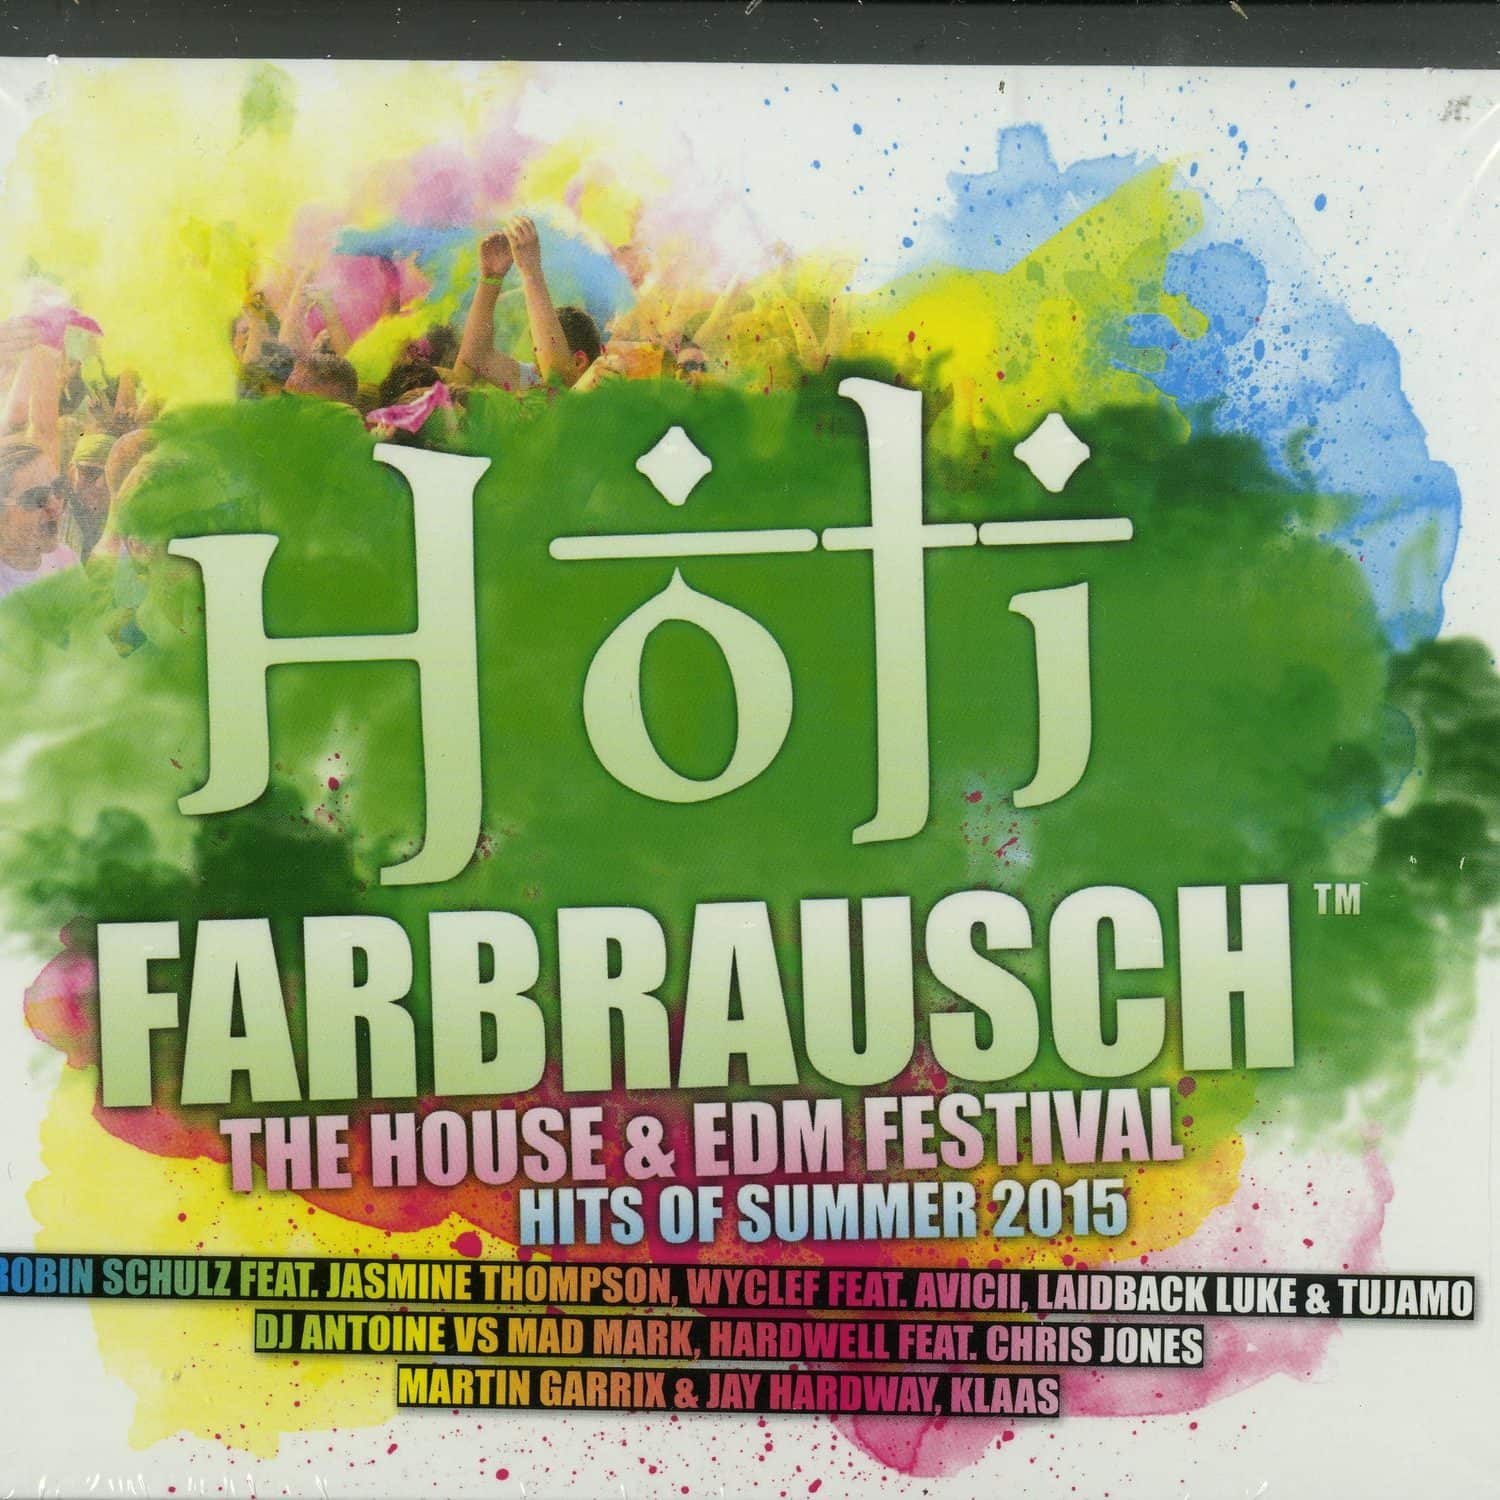 Flac 2015. Farbrausch. CD House.